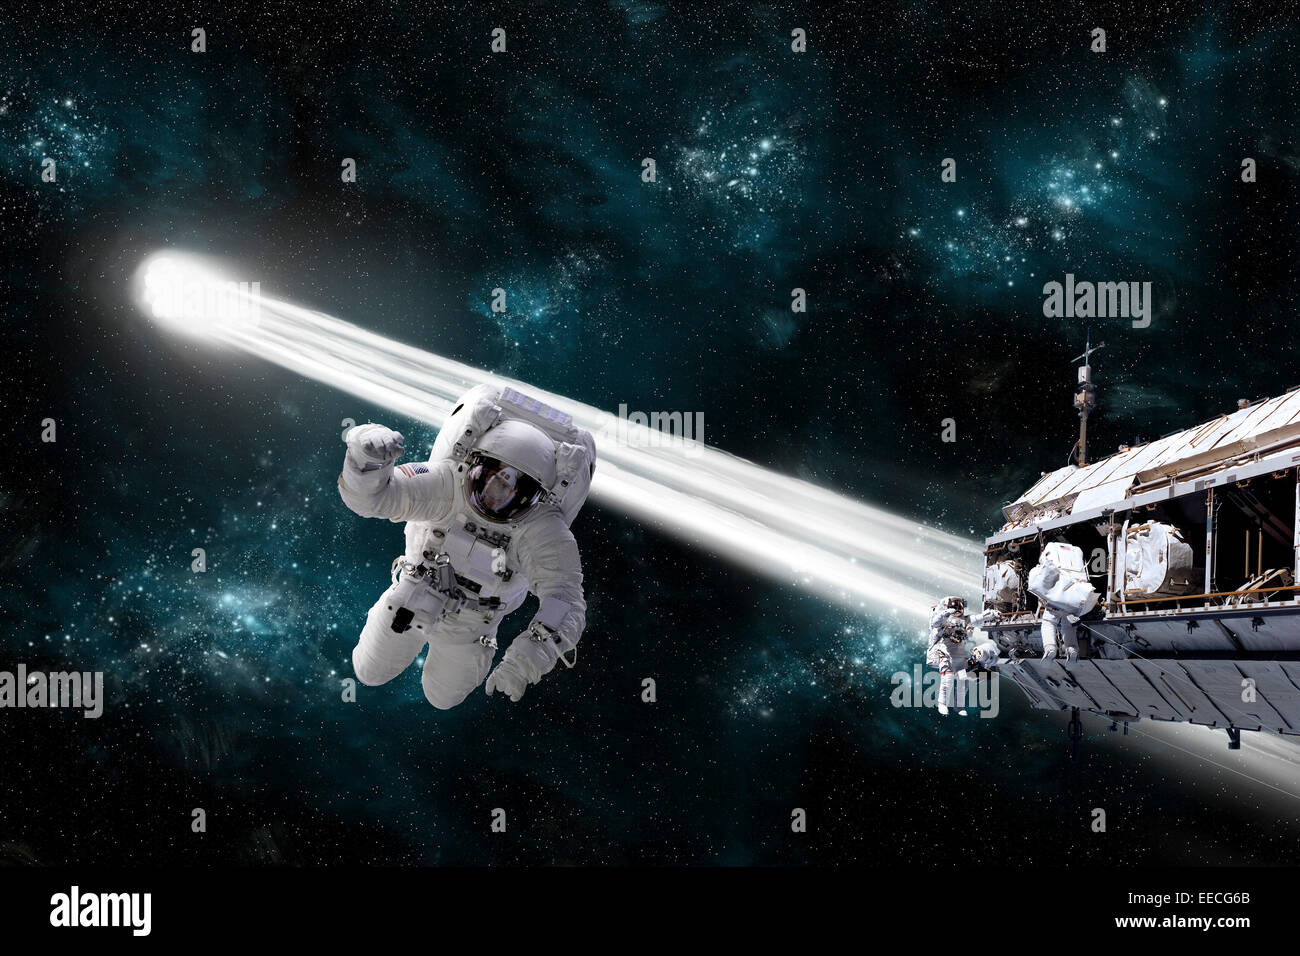 Concept de l'artiste d'un astronaute flottant dans l'espace tandis que ses collègues les astronautes travaillent sur une station spatiale. Une comète passe dan Banque D'Images